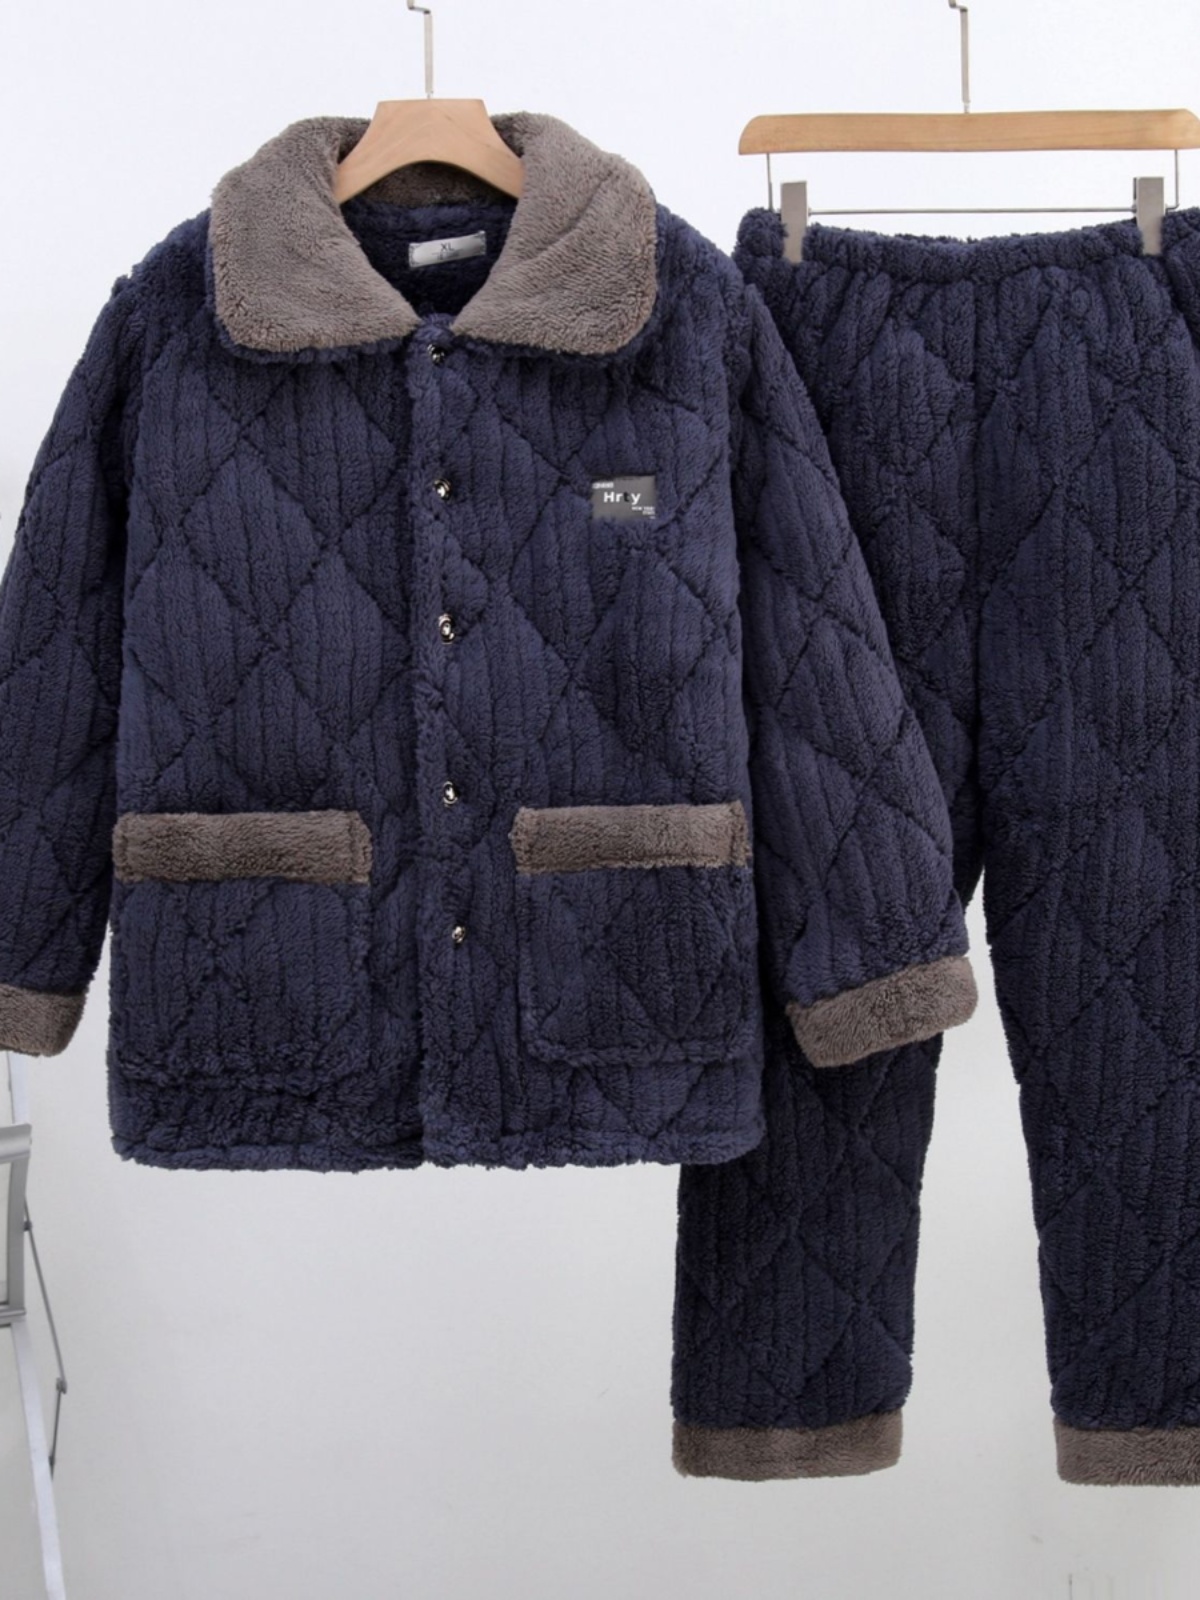 新品冬季款珊瑚绒男士睡衣三层夹棉加厚加绒法兰绒超厚家居服保暖